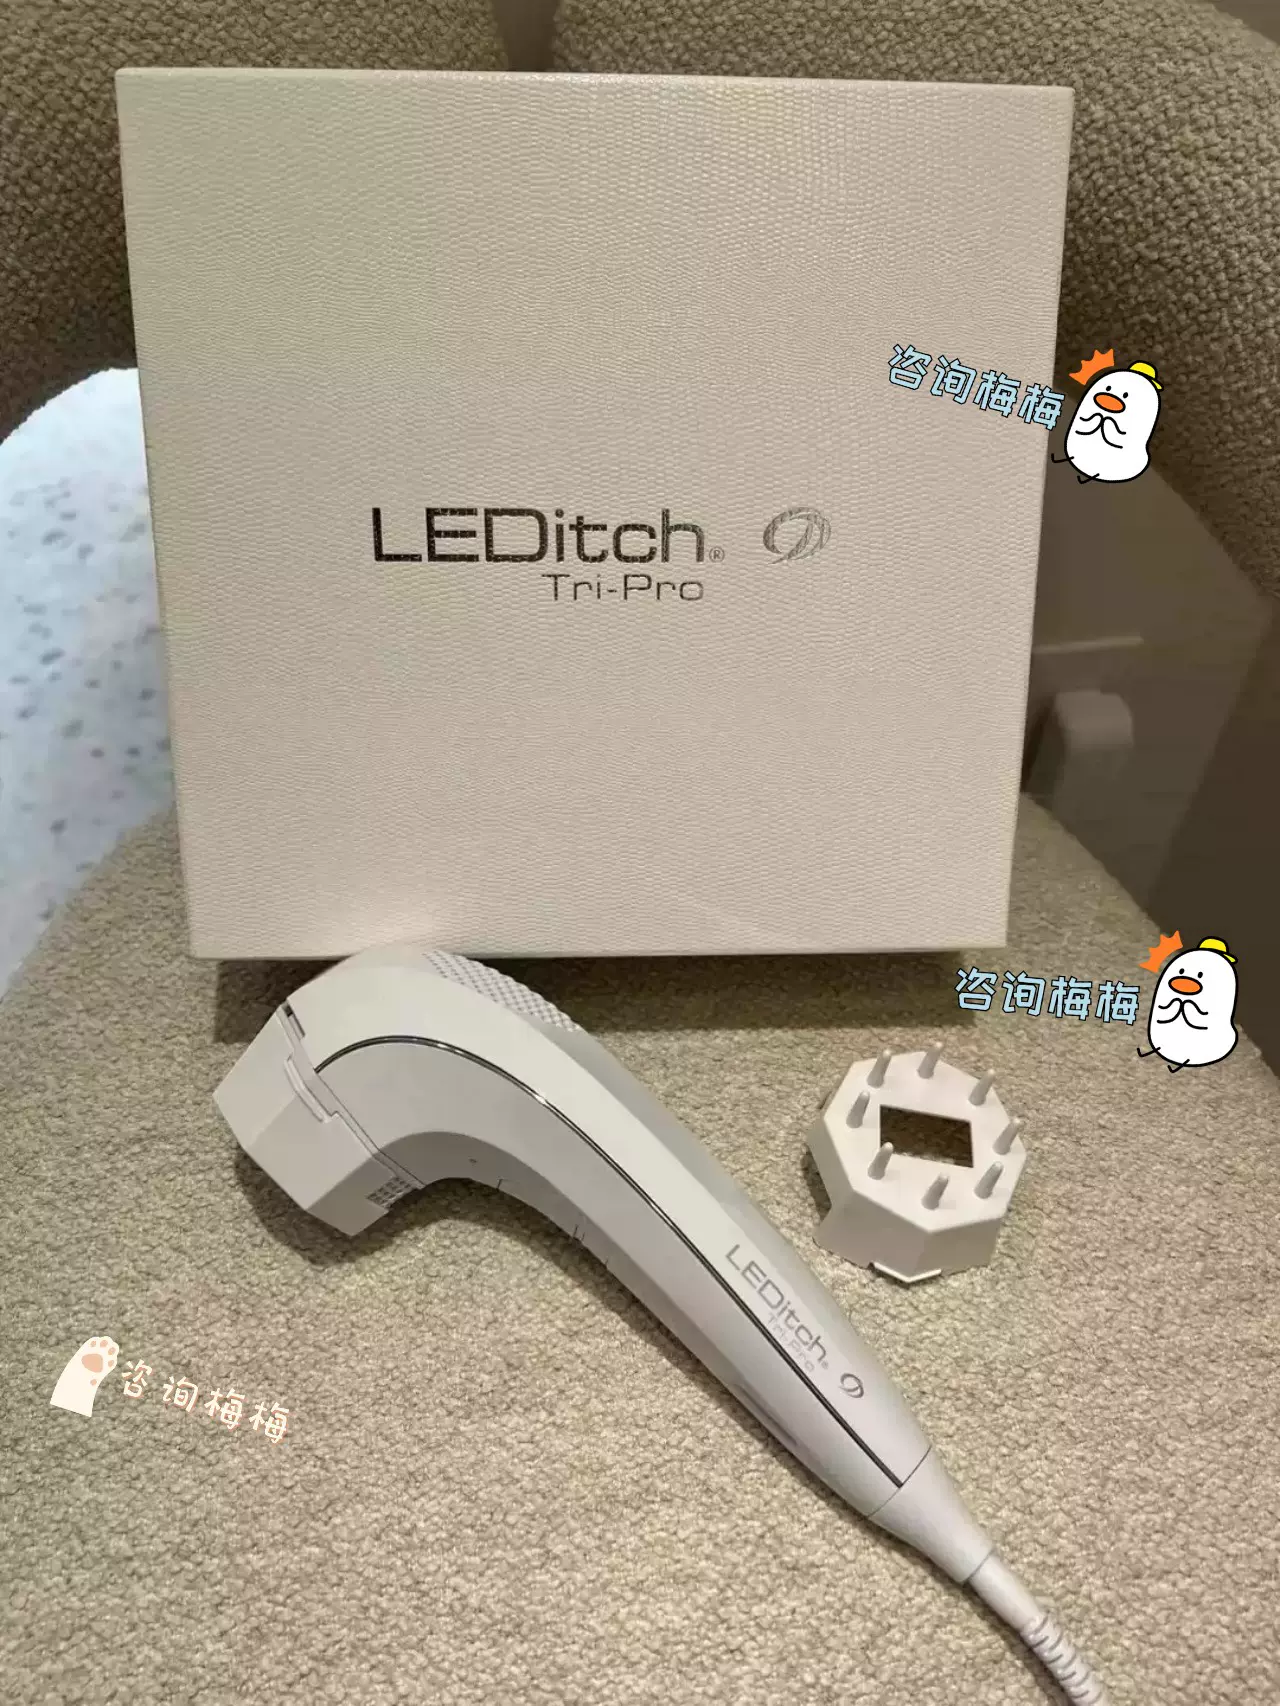 咨询梅梅日本珂尔美蕾缔绮LEDitch Tri-Pro美发美齿LED美容仪-Taobao